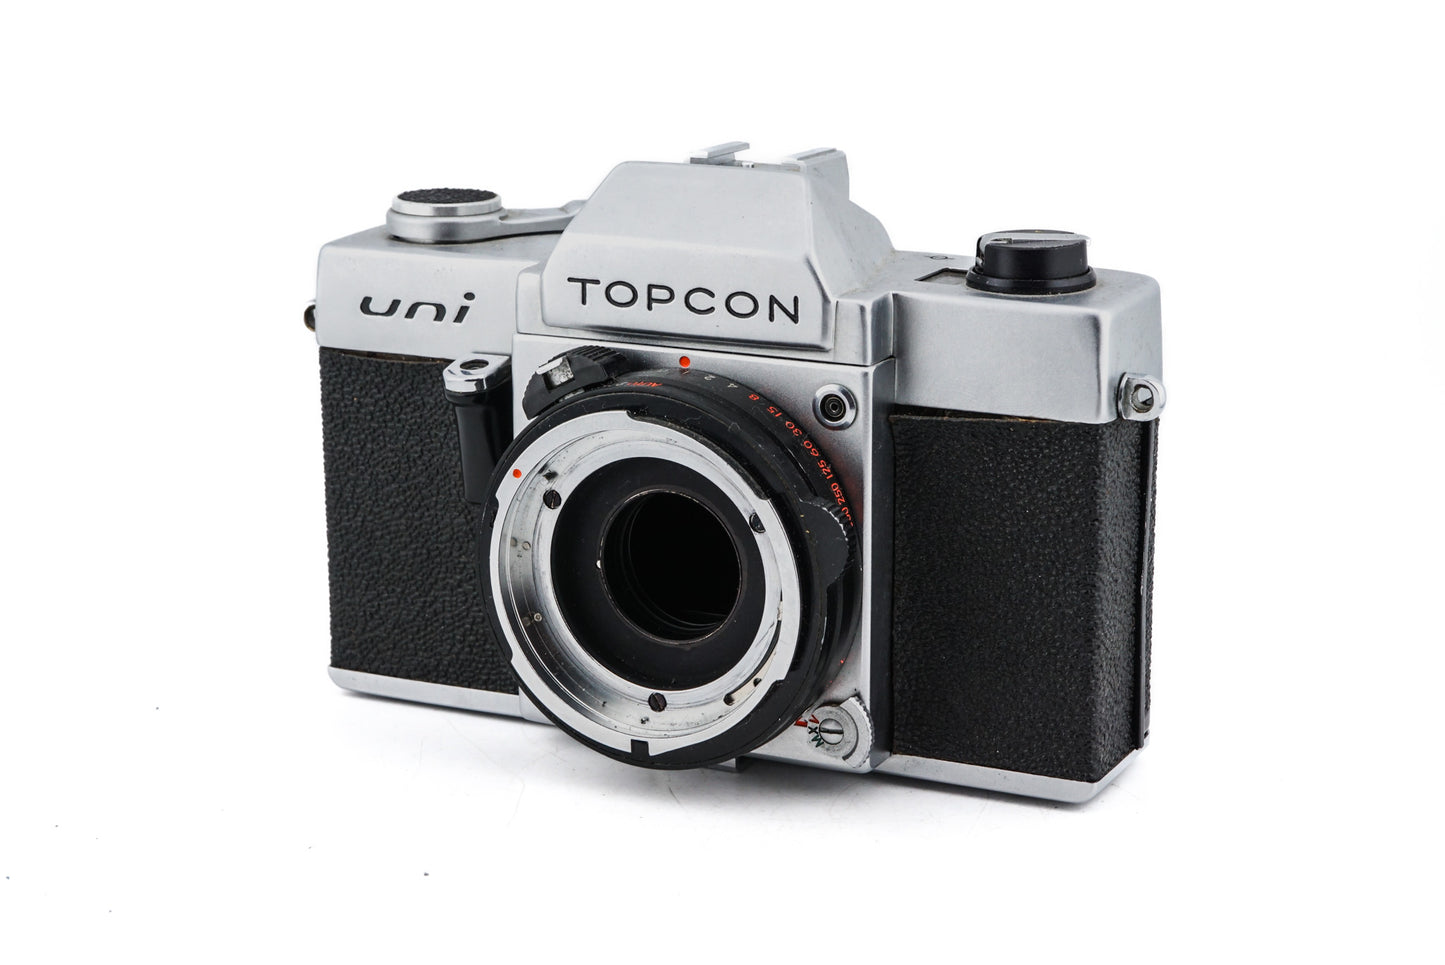 Topcon Uni - Camera